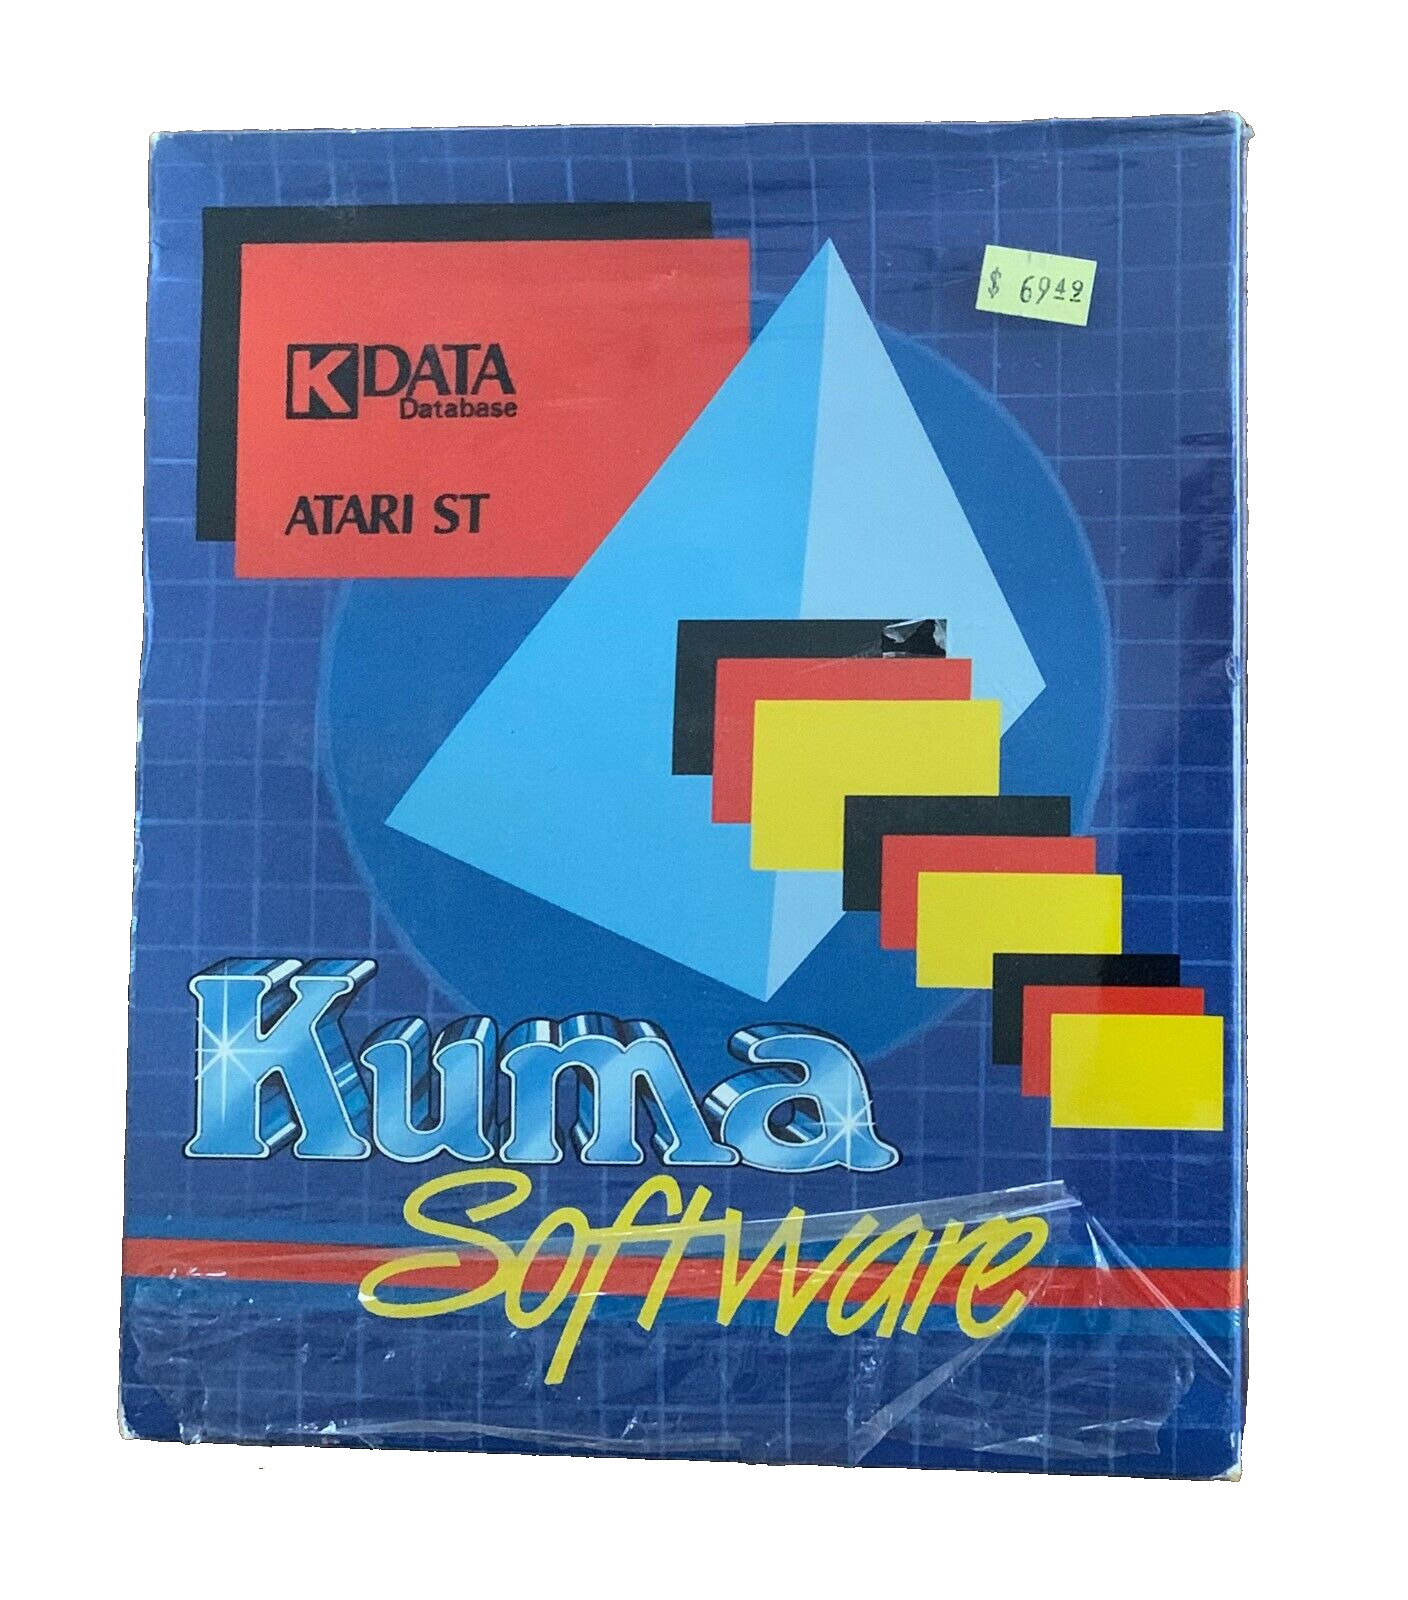 NEW/SEALED ATARI ST Kuma Software K-DATA GEM database Word STe VTG COMPUTER 80s